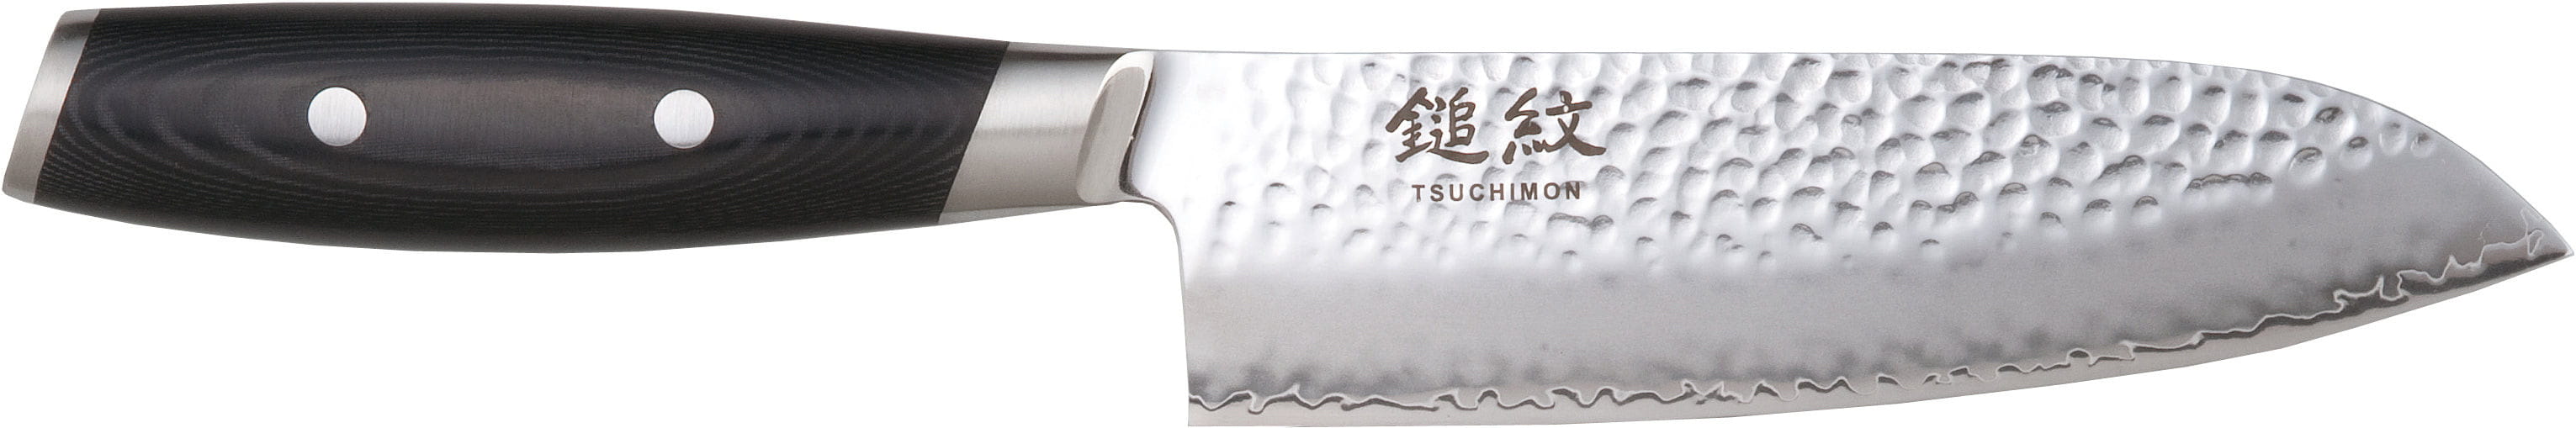 Yaxell Tsuchimon Santoku Knife, 16,5 Cm